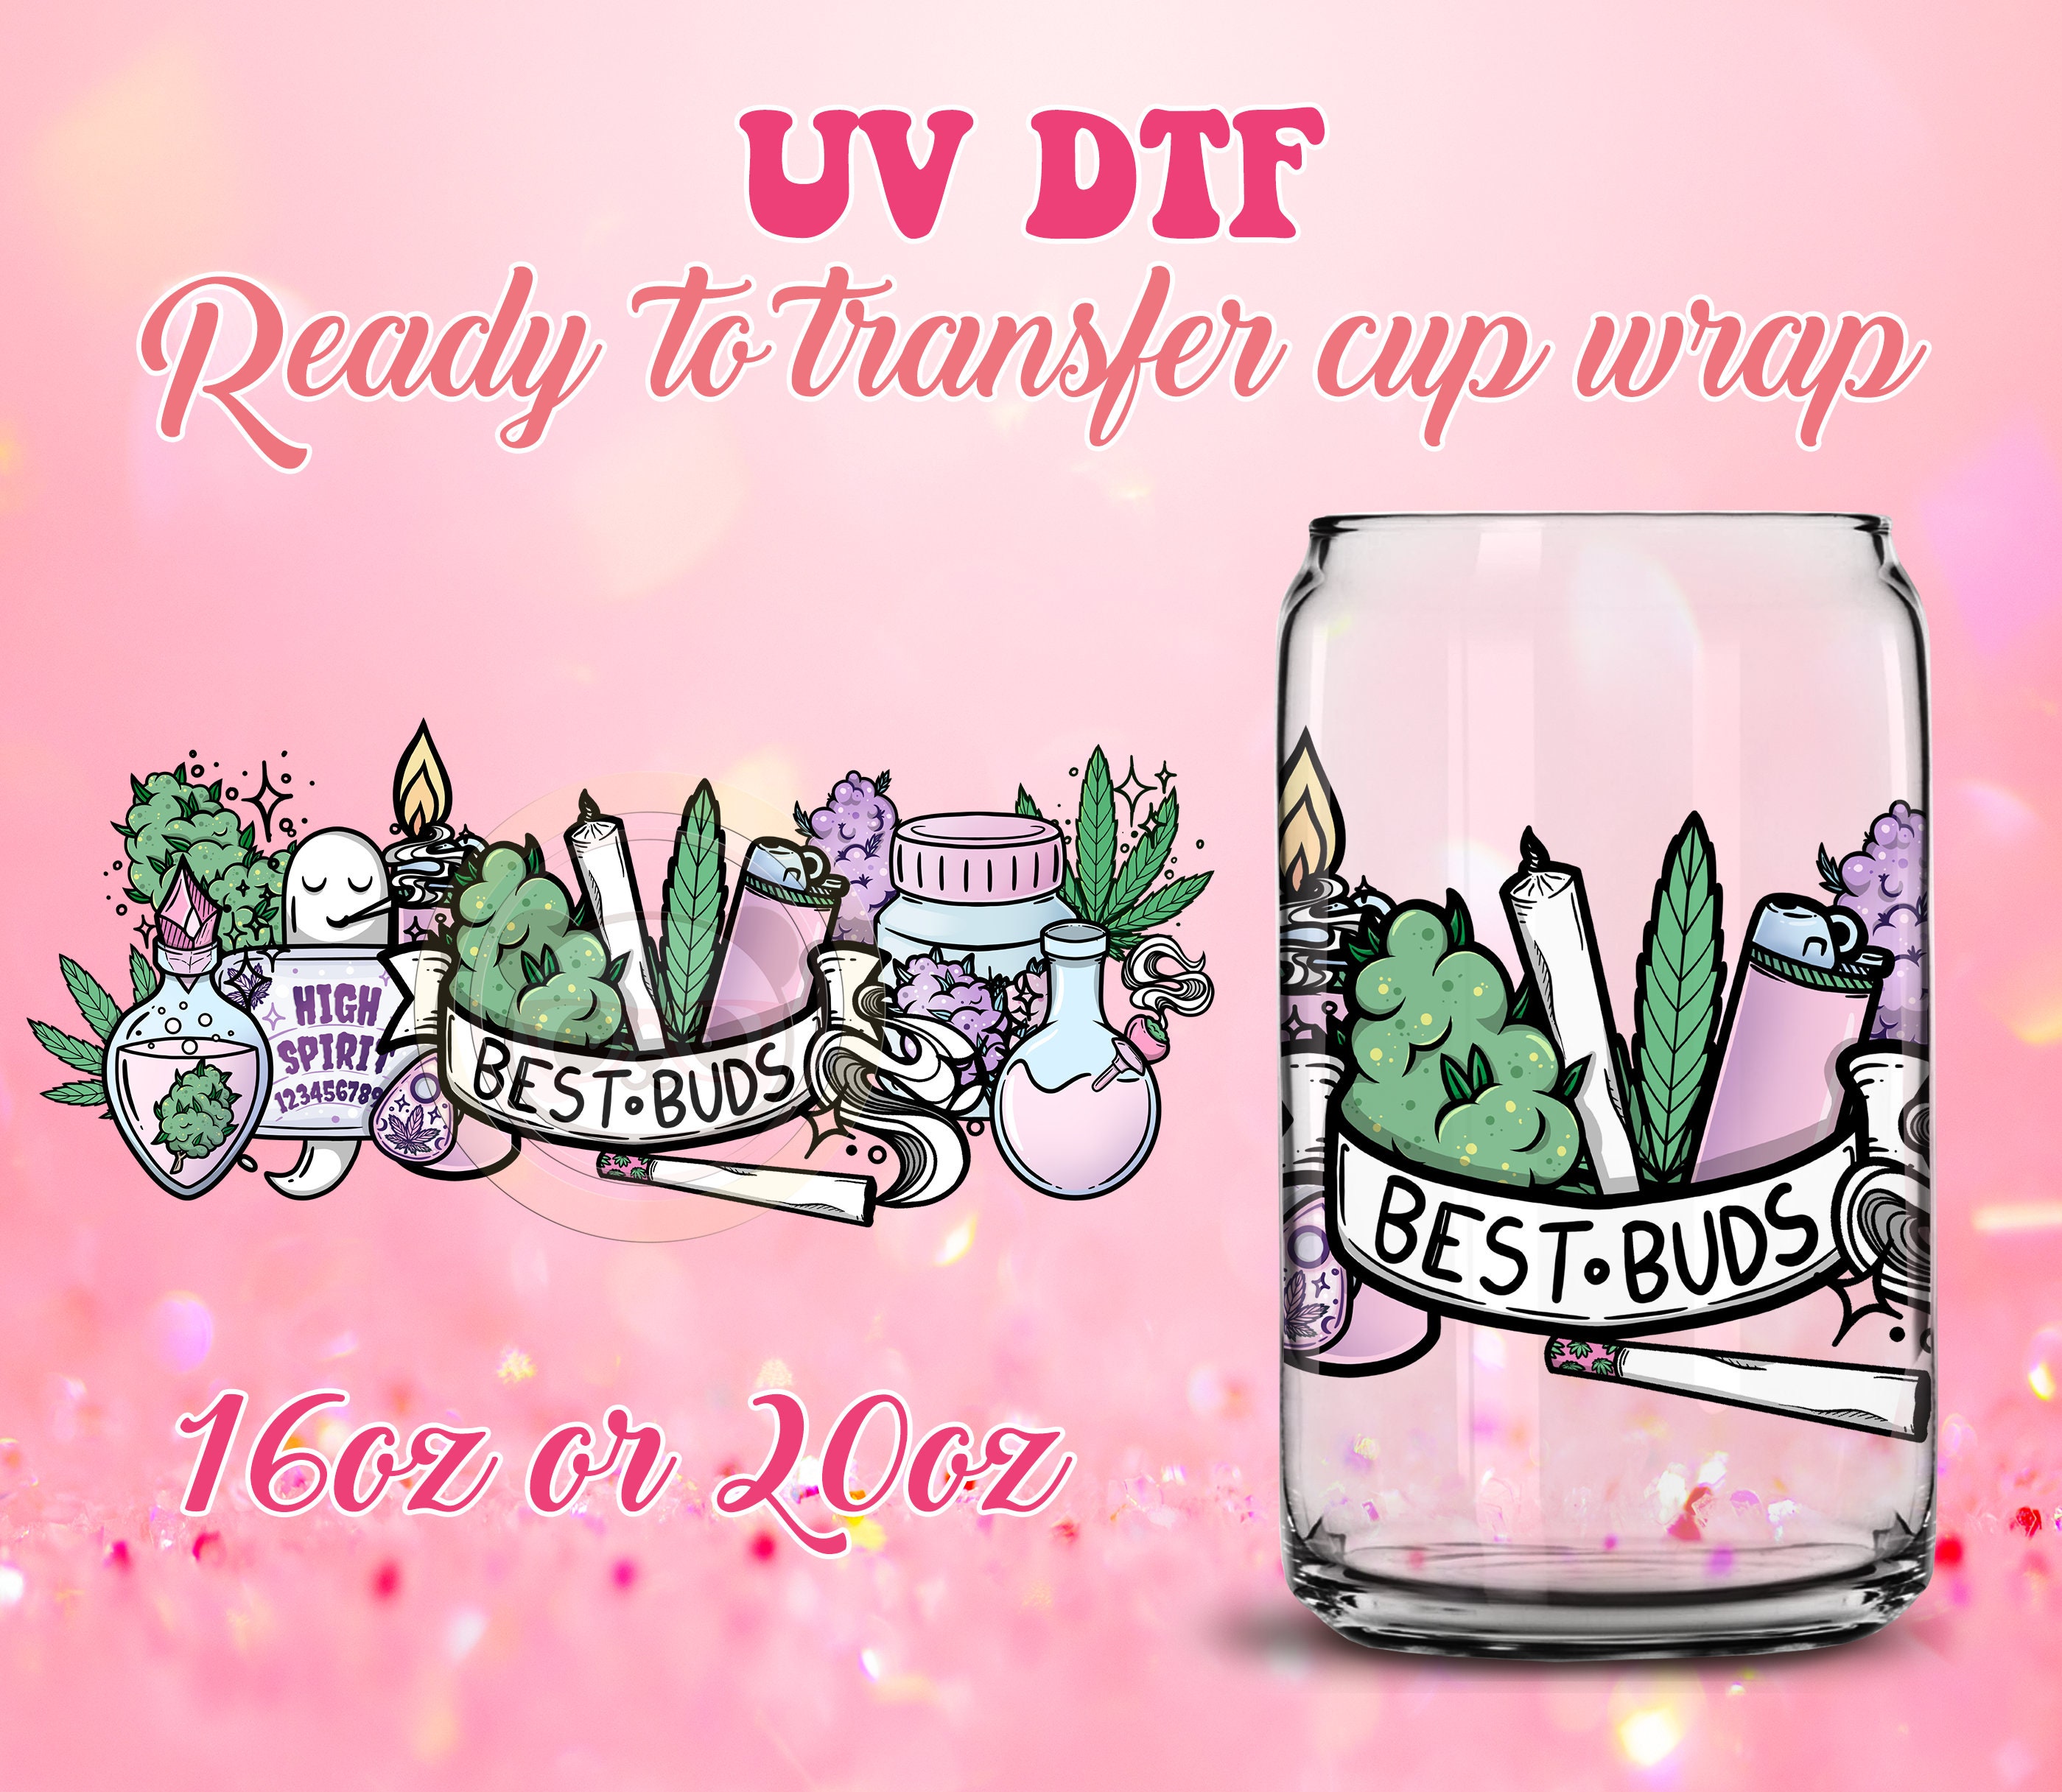 Transfer Sticker Leopard Theme Waterproof Uv Dtf Cup Wrap - Temu